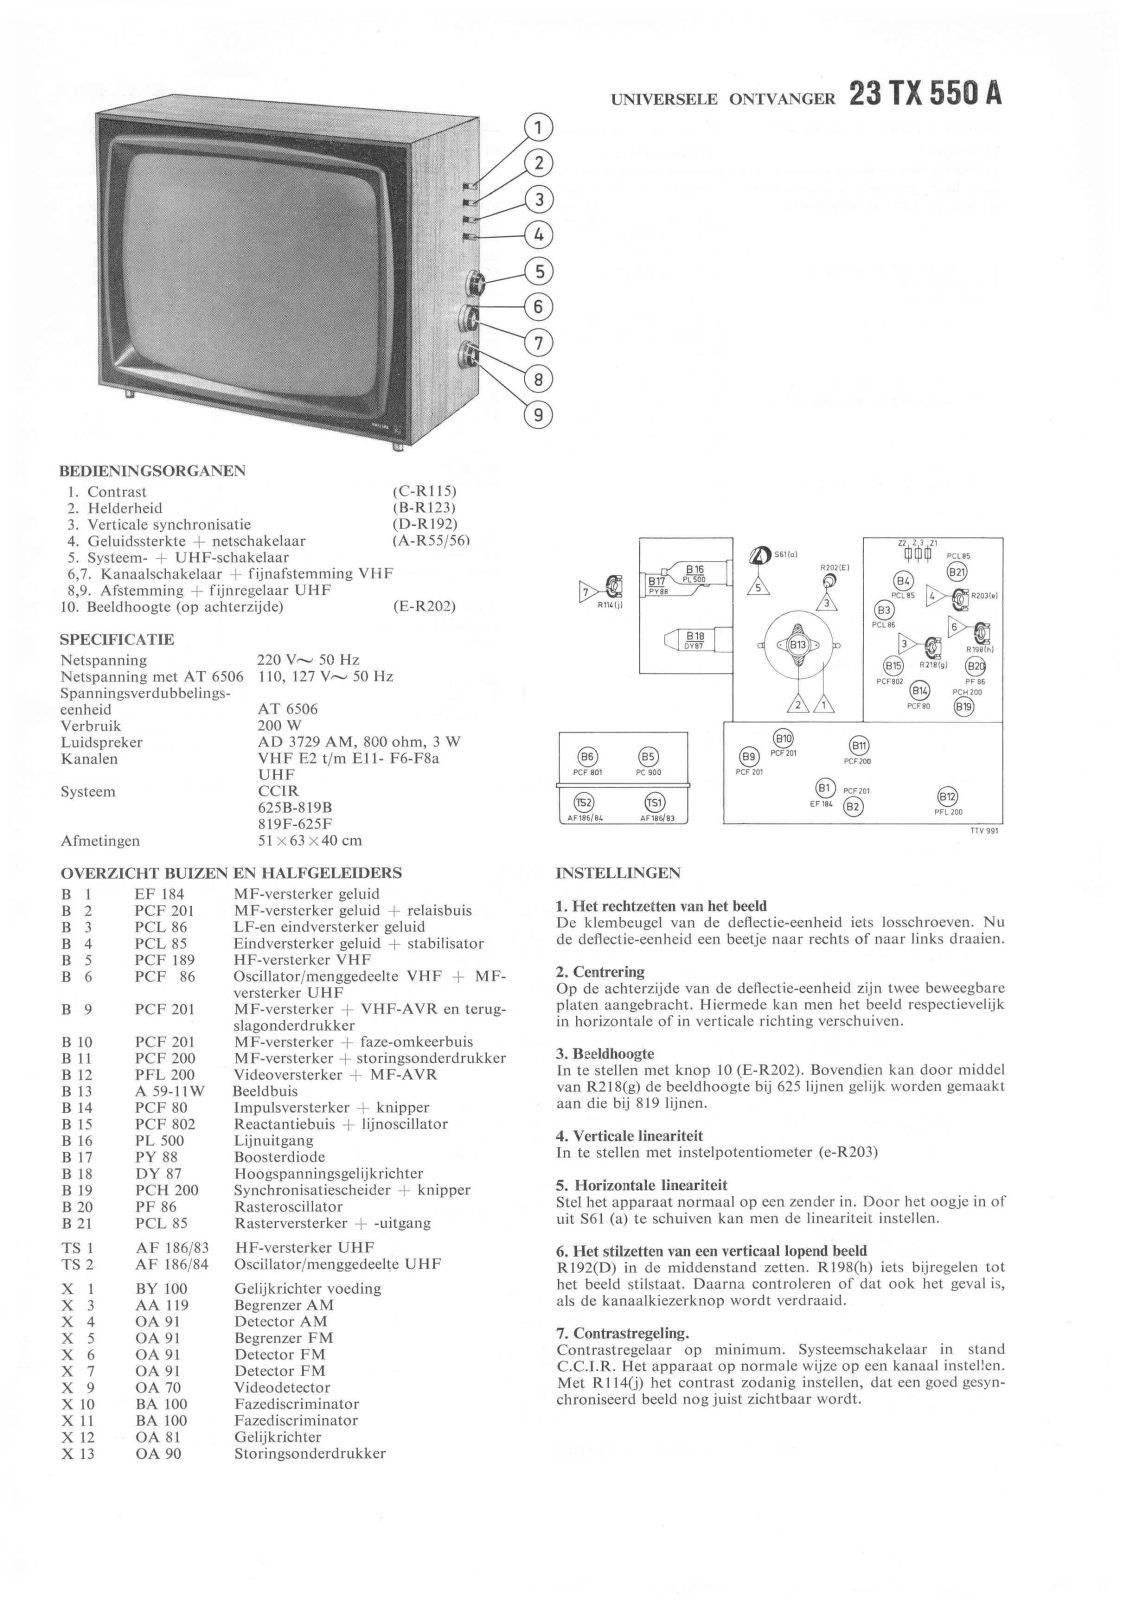 Philips 23TX550A Schematic